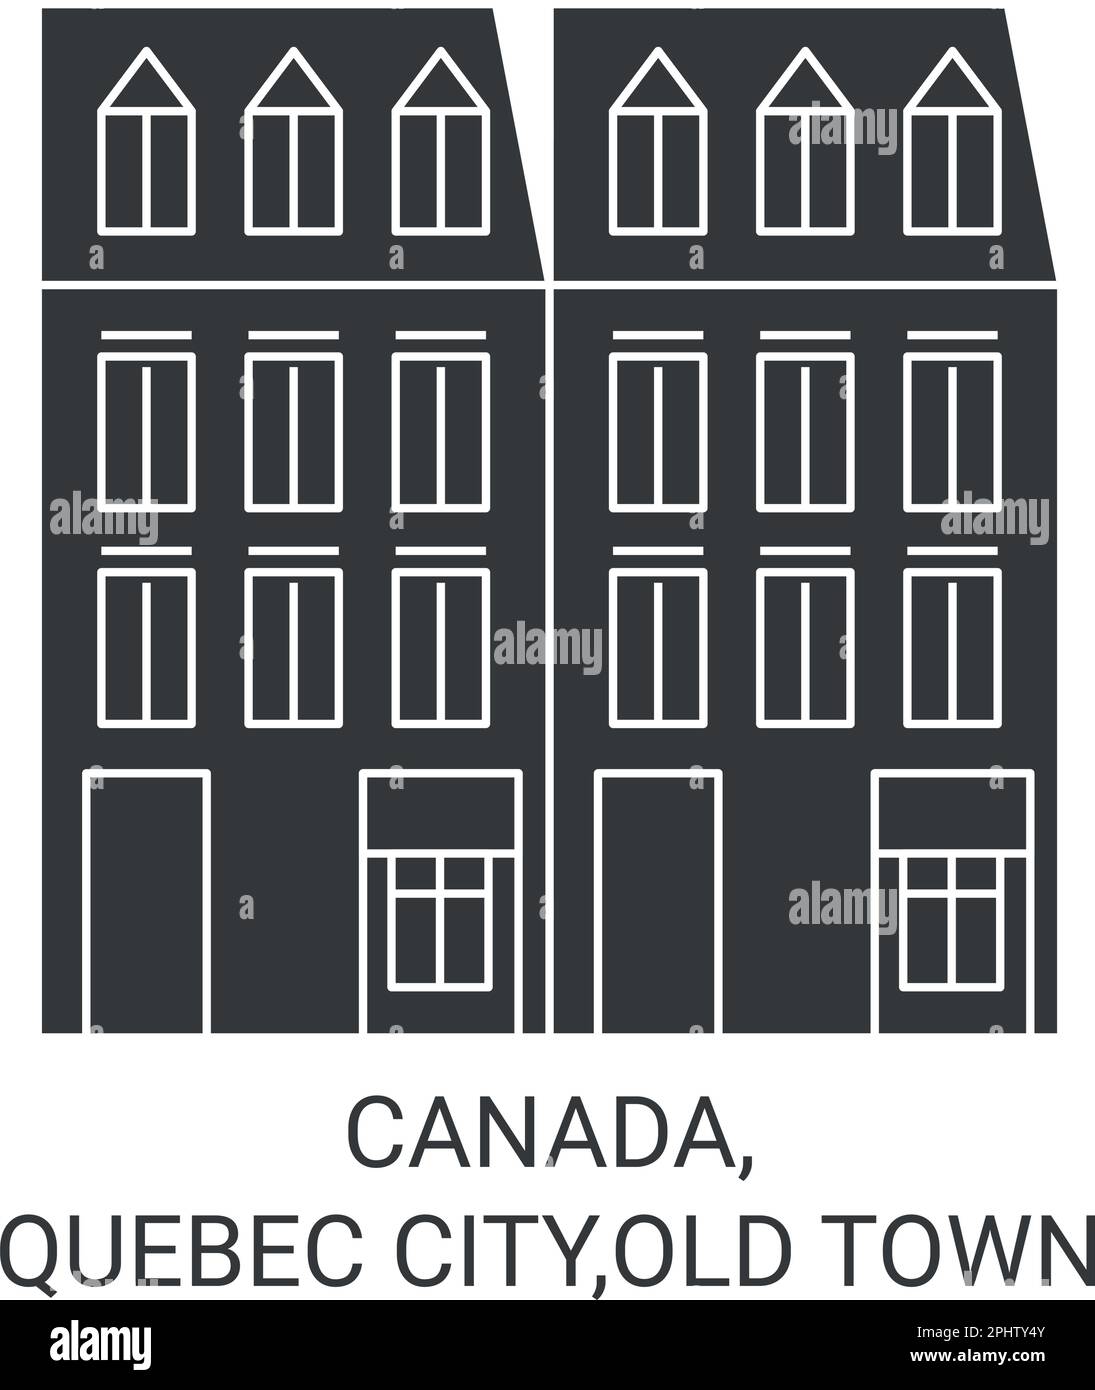 Vektordarstellung der Reiseziele Kanada, Quebec City, Old Town Stock Vektor